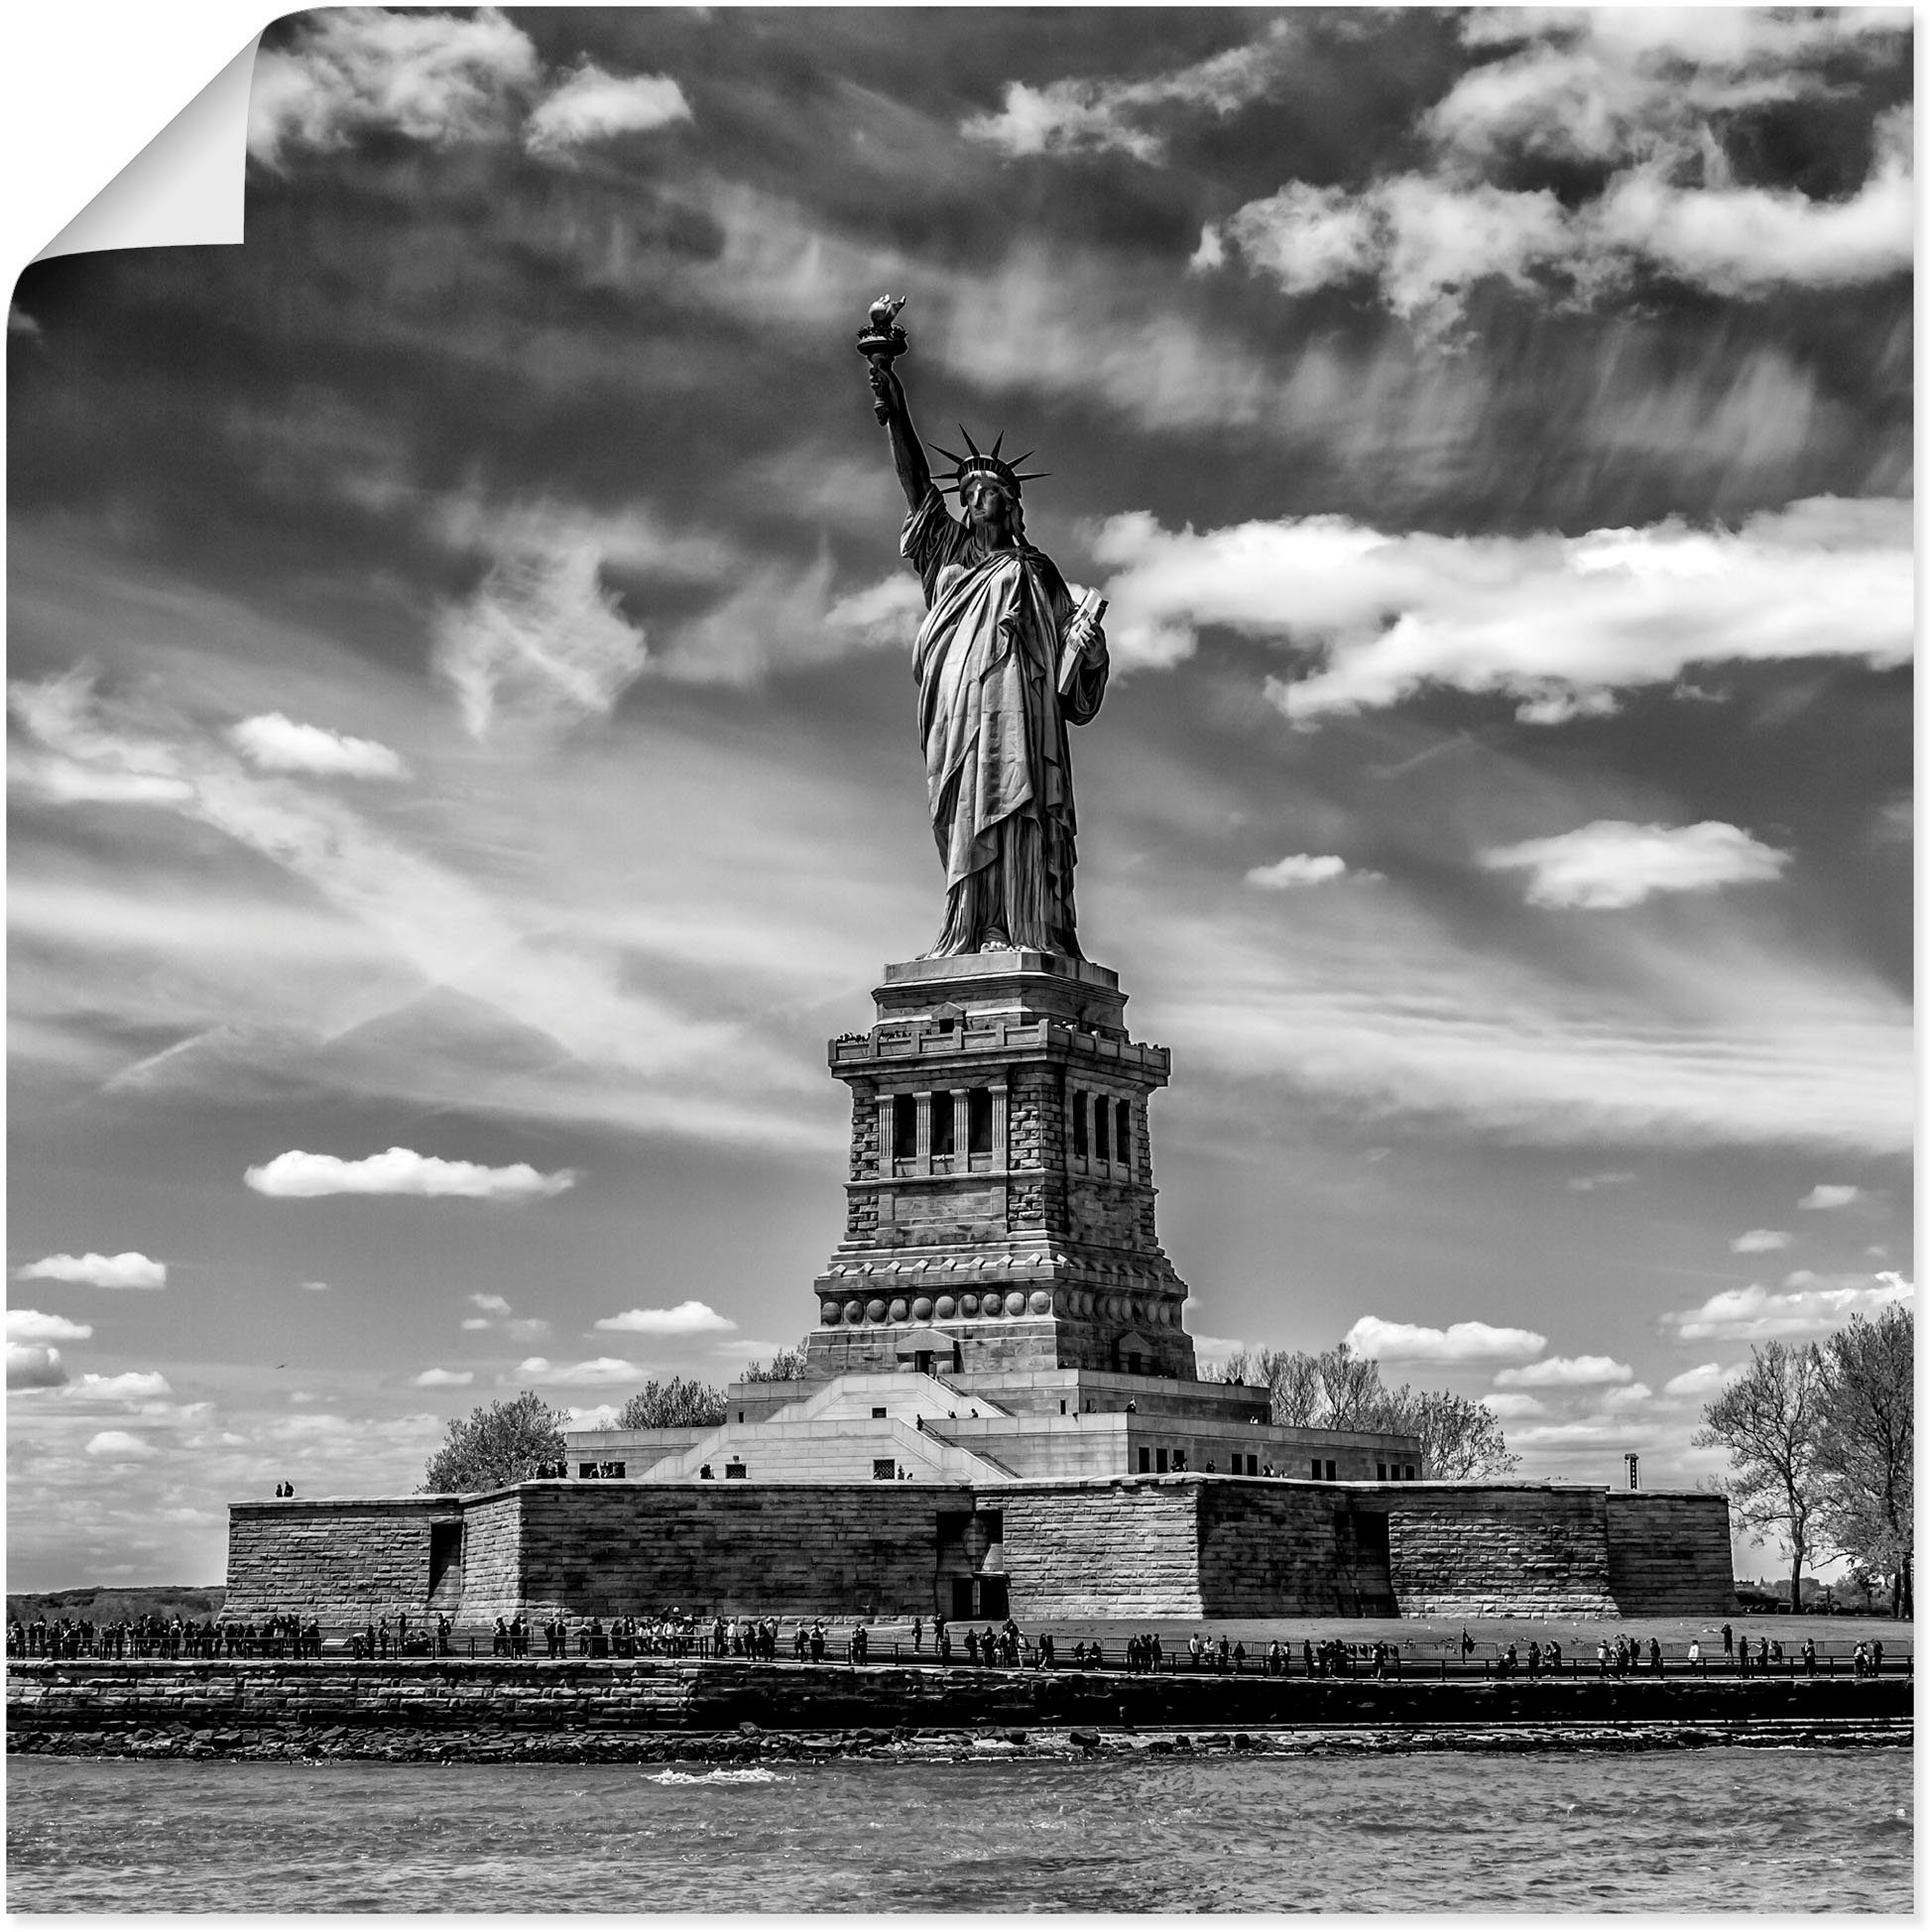 Artland Artprint New York City Vrijheidsbeeld in vele afmetingen & productsoorten - artprint van aluminium / artprint voor buiten, artprint op linnen, poster, muursticker / wandfol